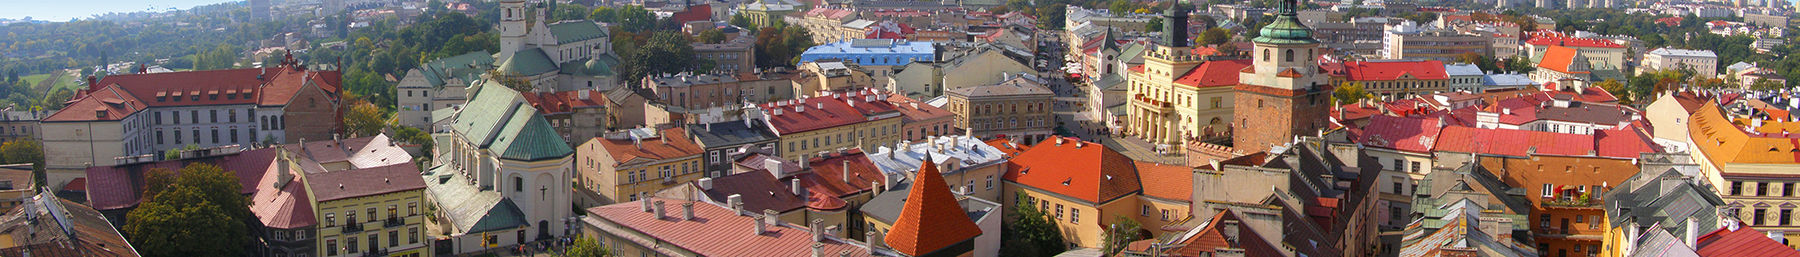 Lublin banner.jpg